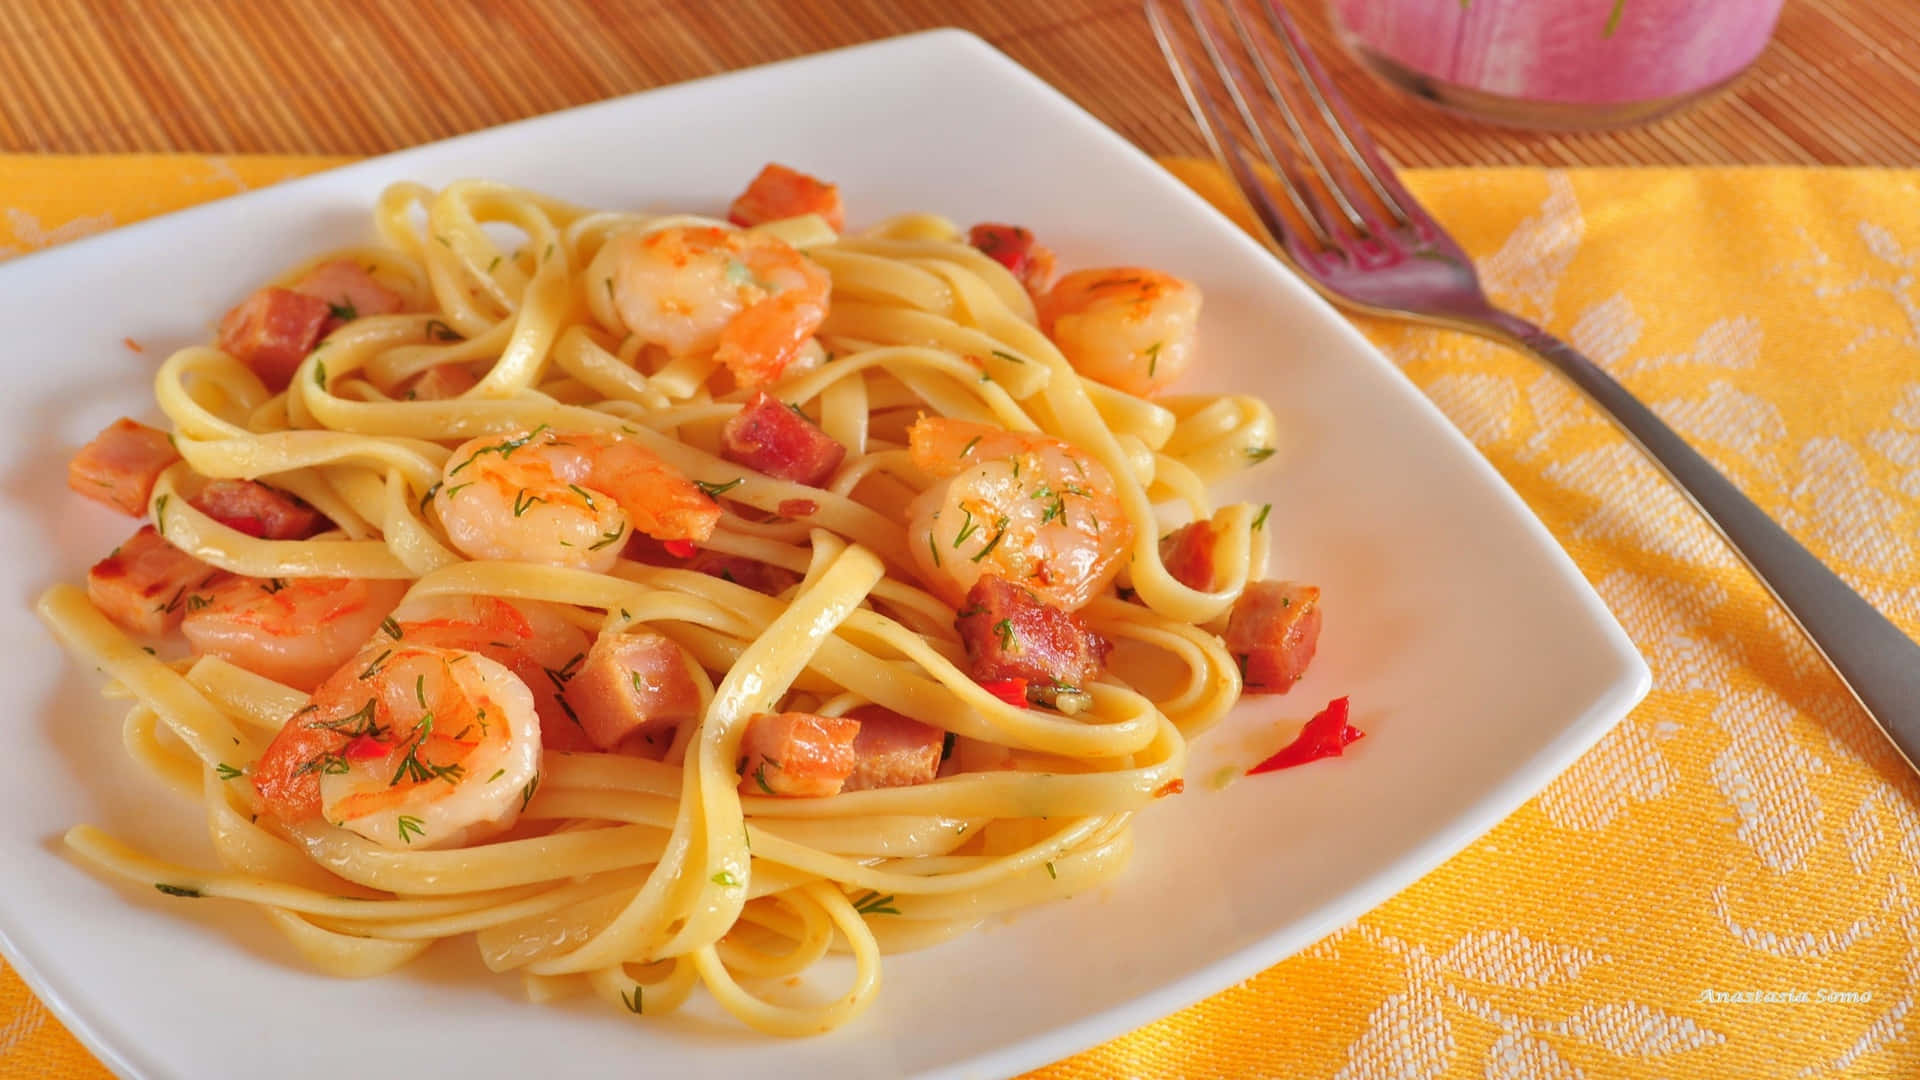 Tag et bid af lækker og nærende 1920x1080 pasta.